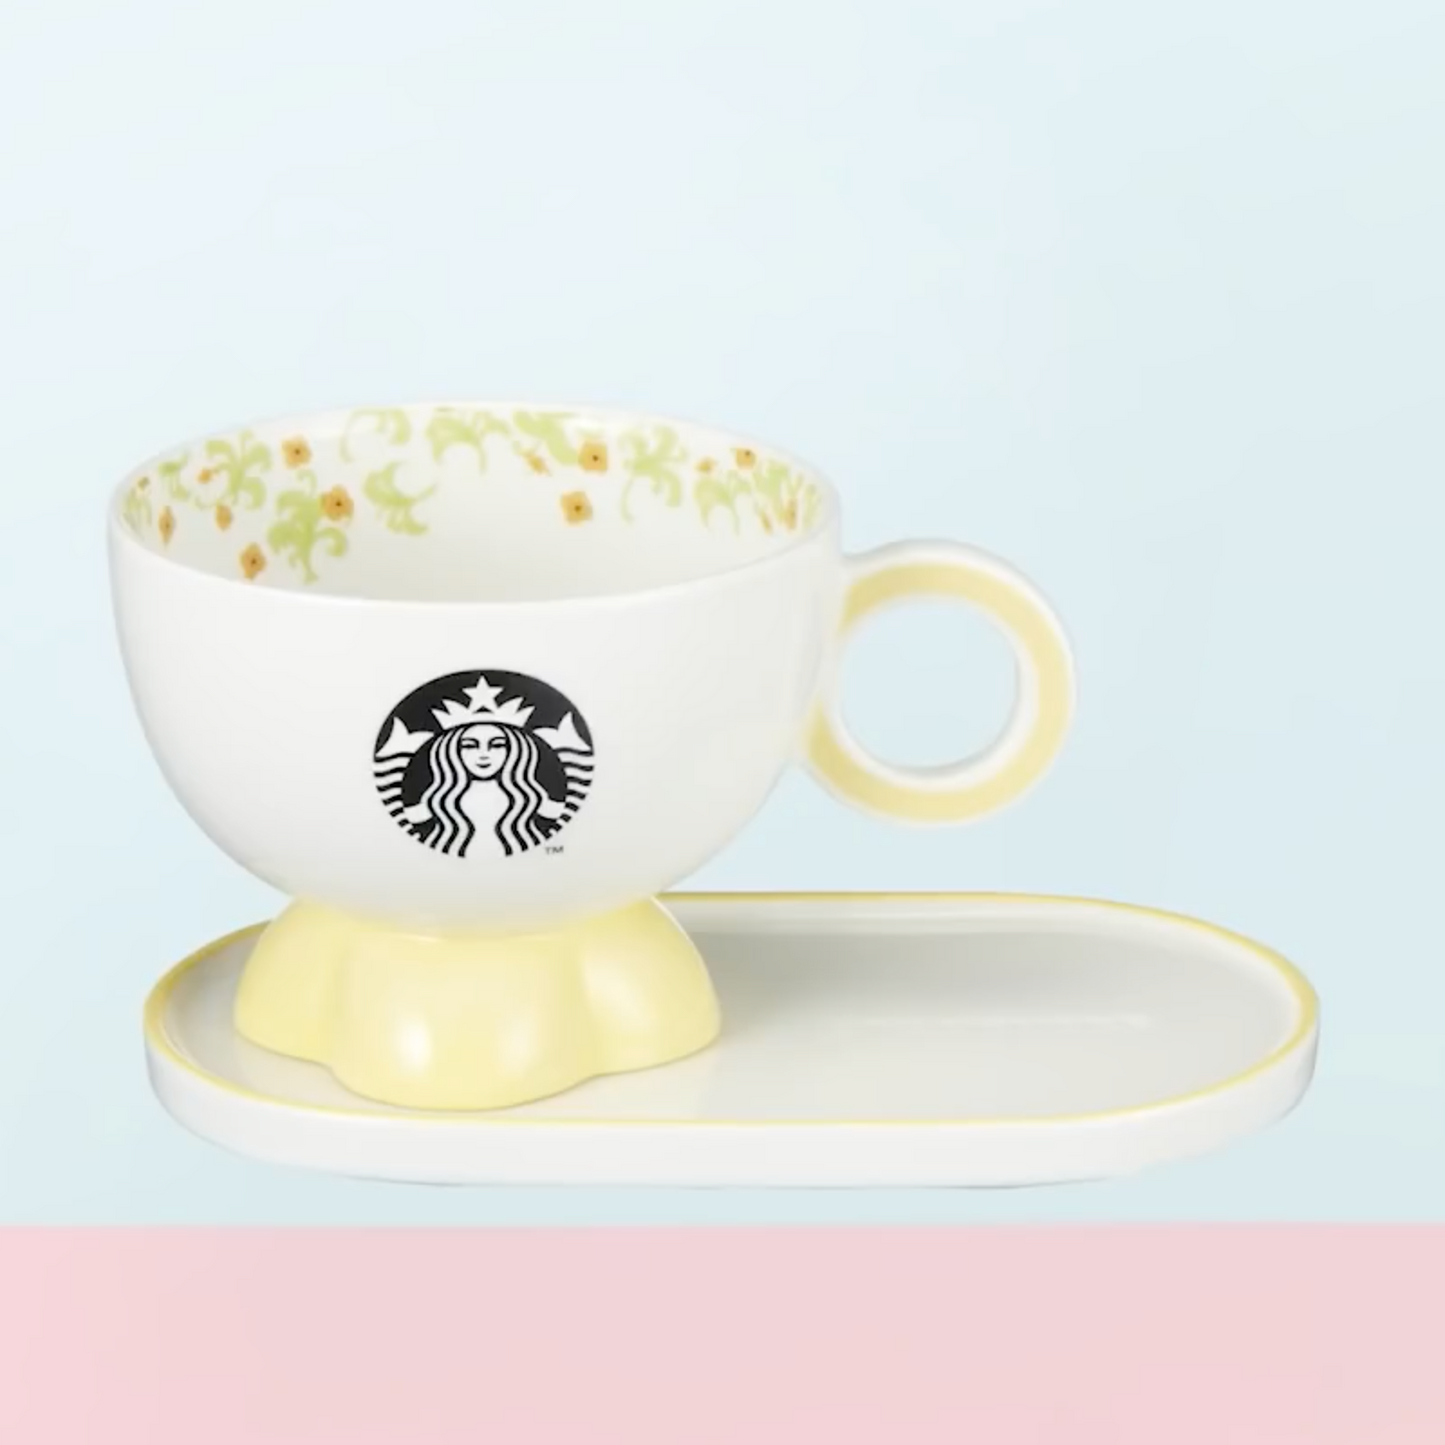 Starbucks Korea 22 Spring Flower Garden Yellow Mug & Saucer 355ml